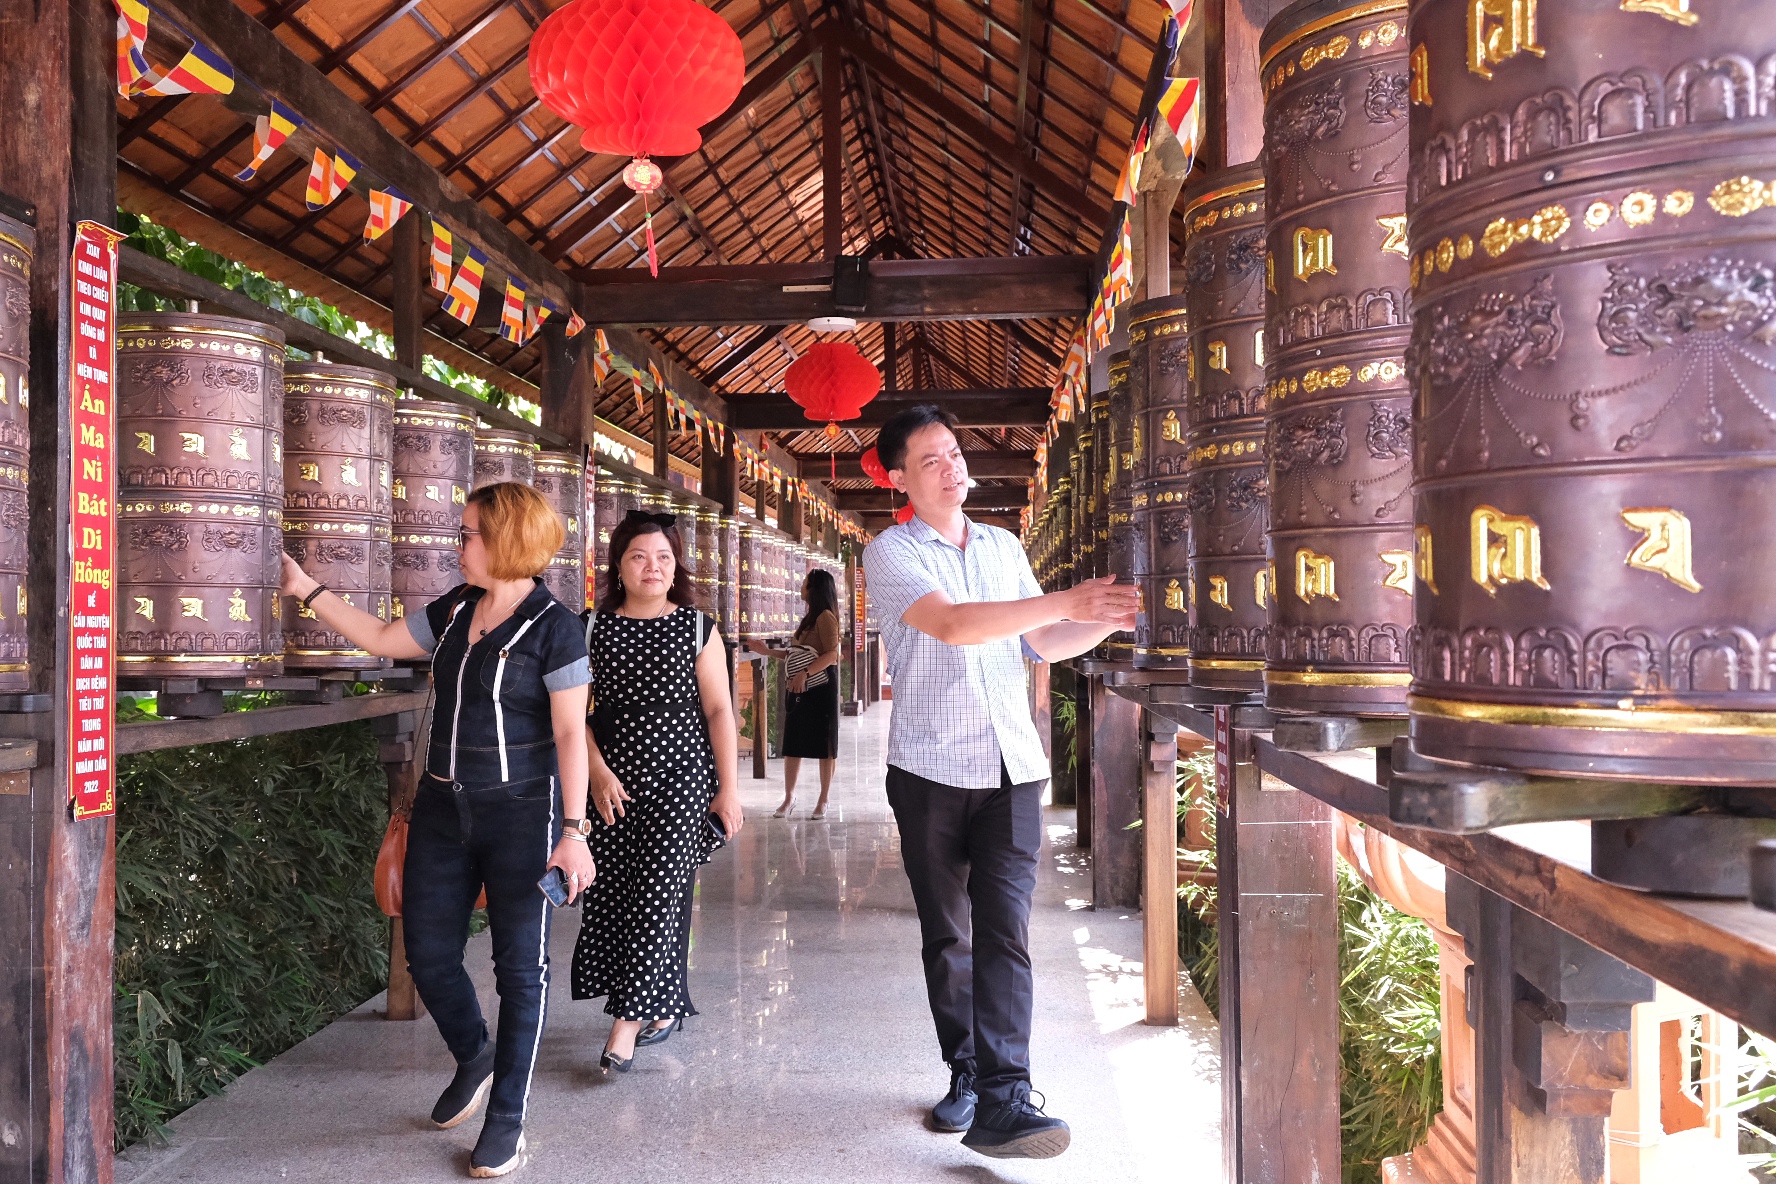 Đoàn khảo sát trải nghiệm vòng xoay an lạc tại chùa Bửu Minh. Ảnh: Hoàng Ngọc